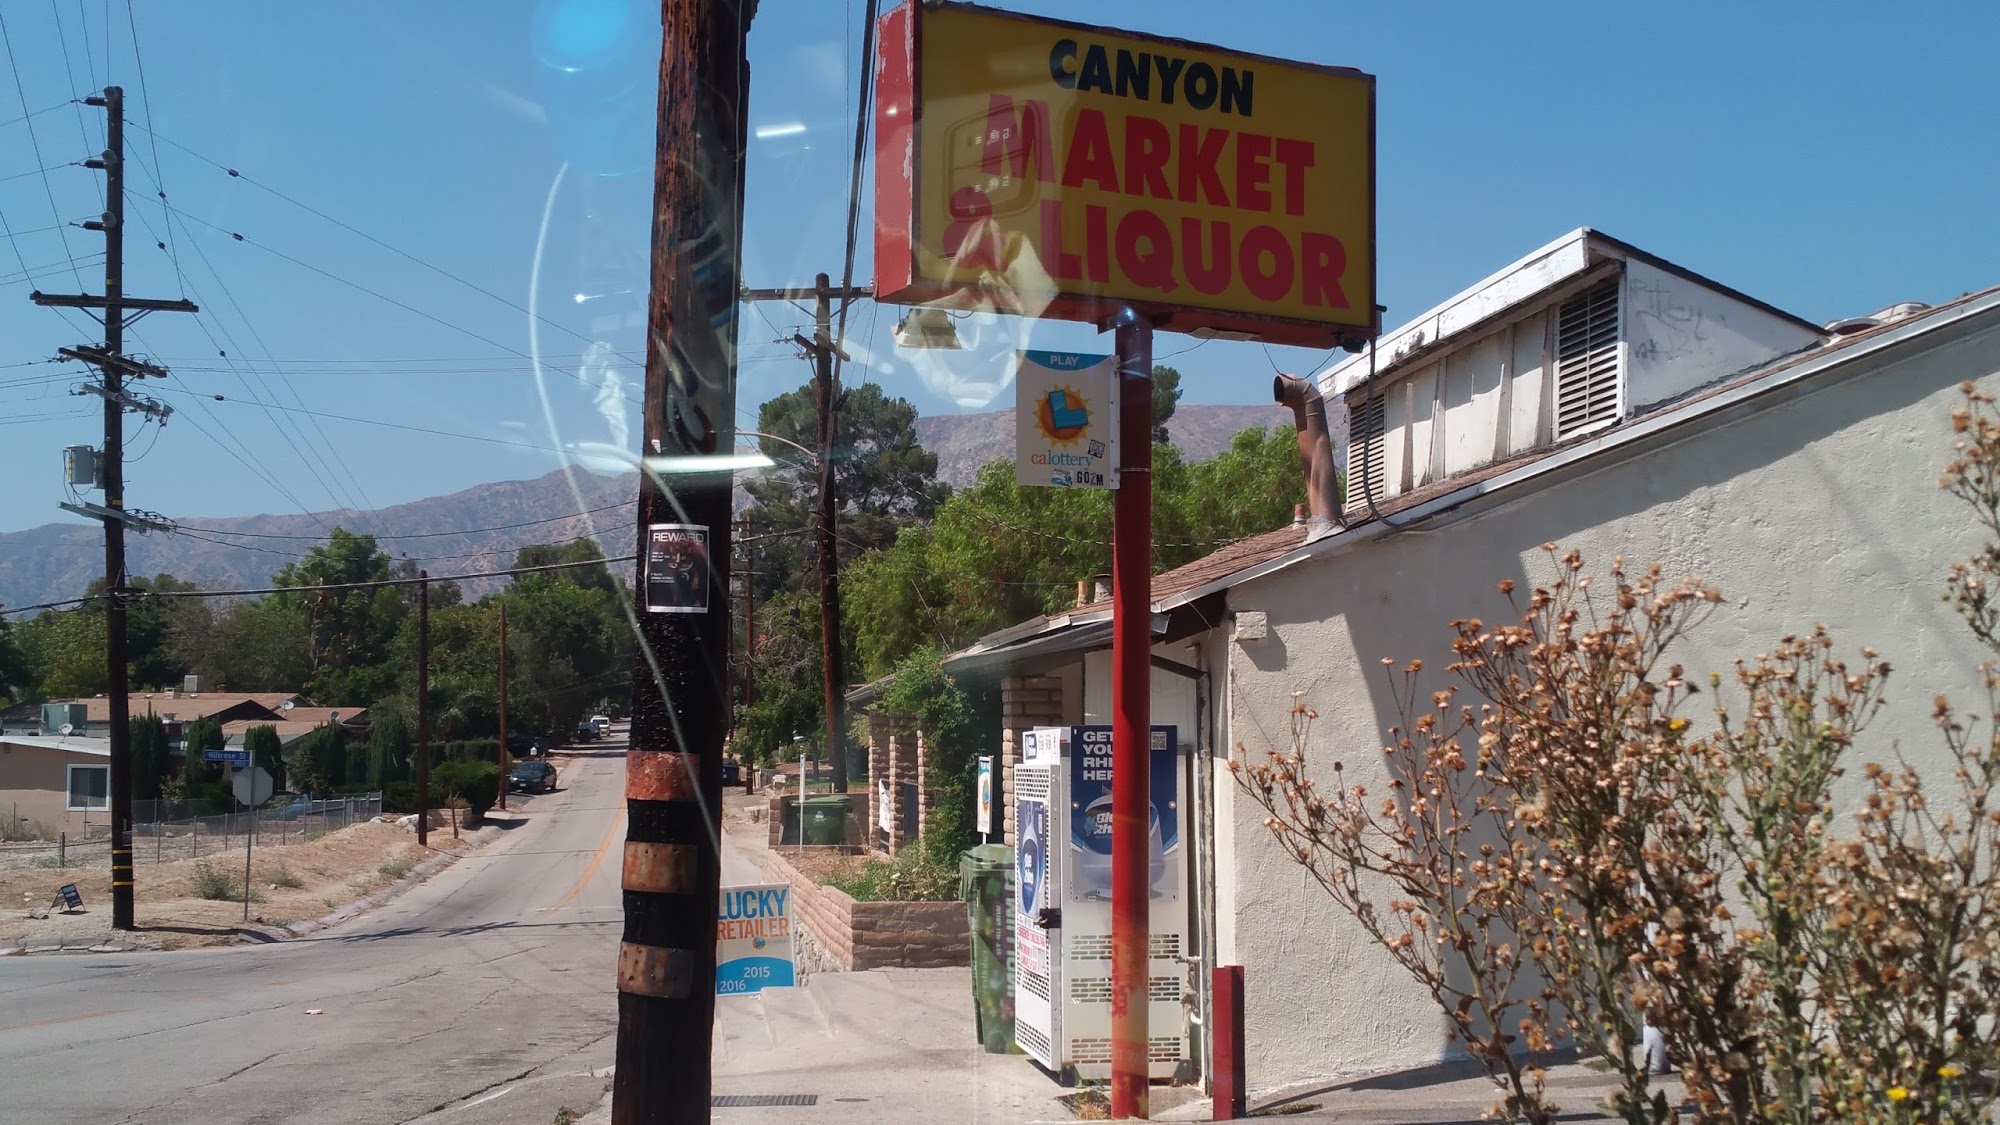 Canyon Market and Liquor